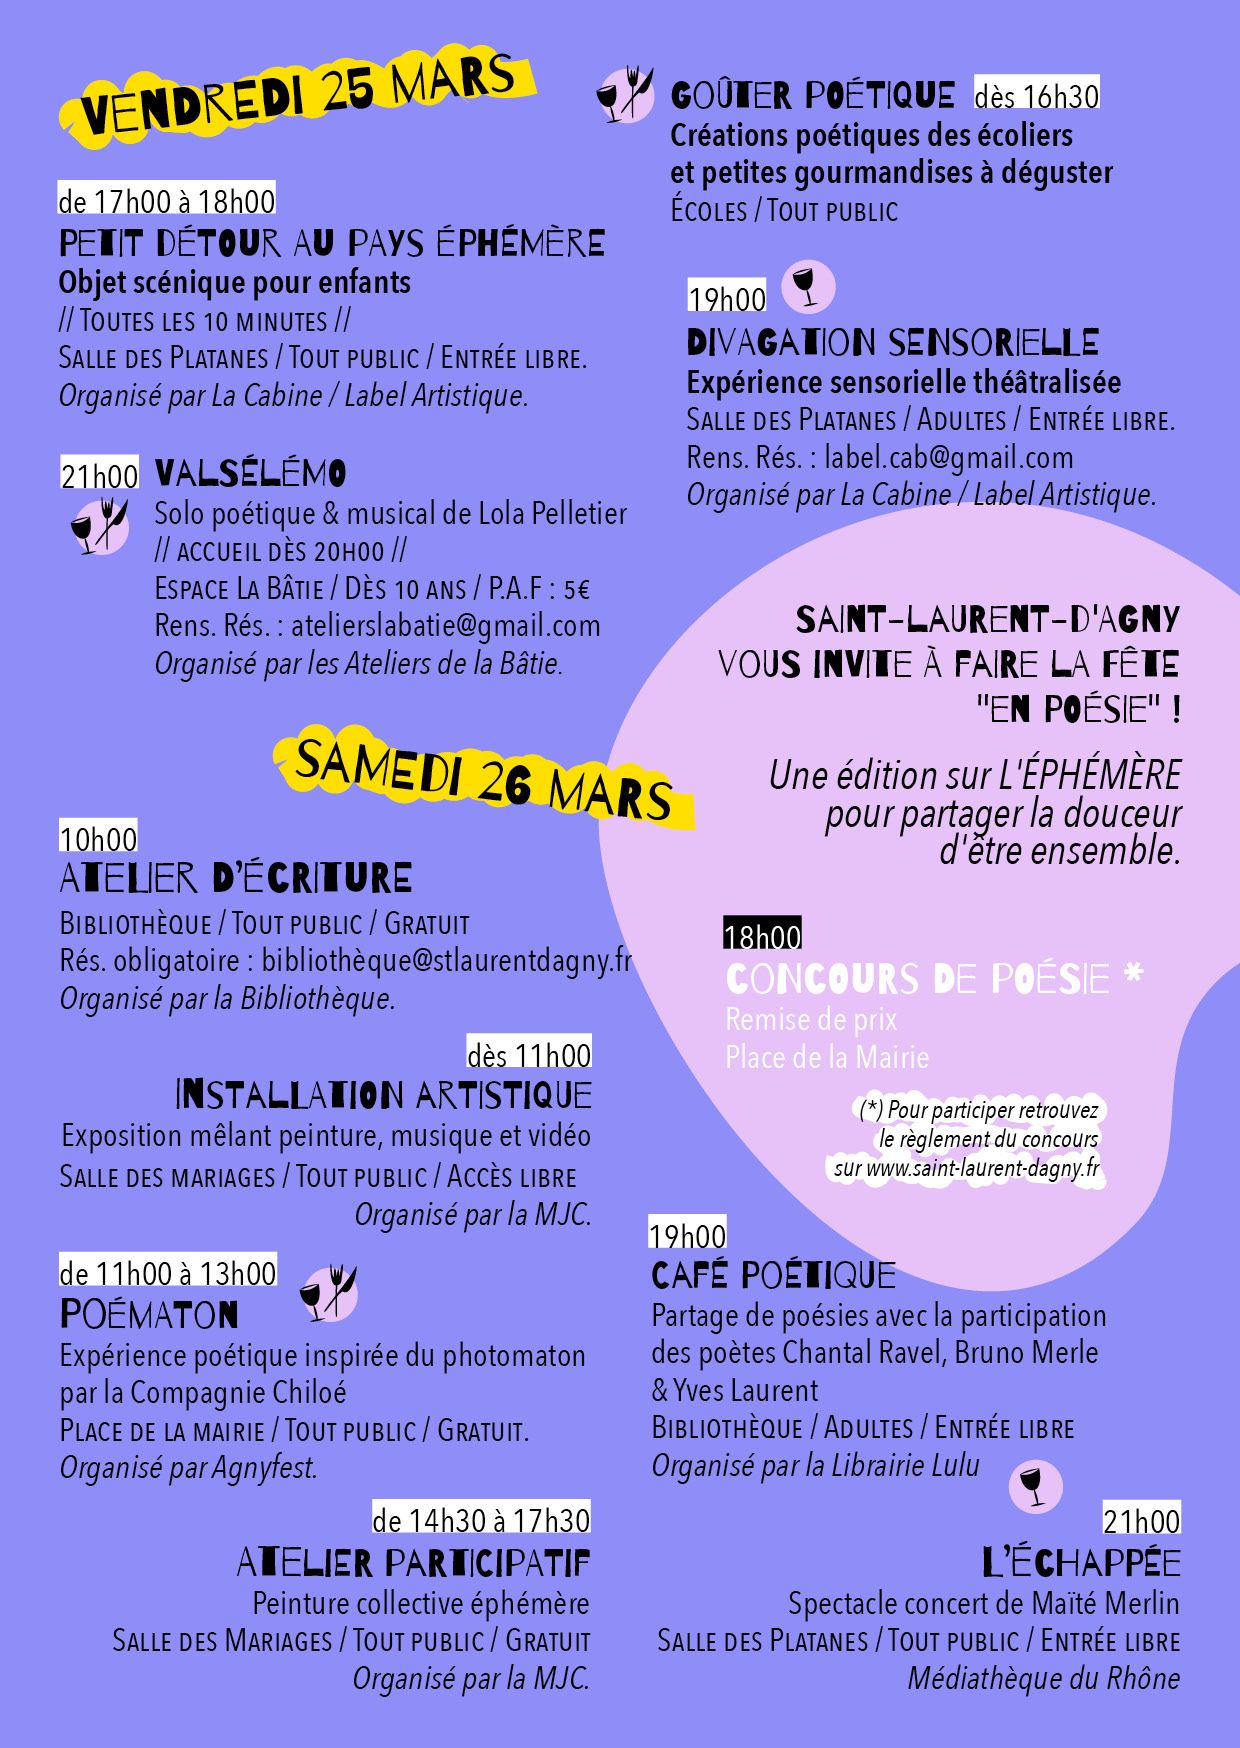 Samedi 26 mars à 19h - Café poétique à la bibliothèque de Saint Laurent d'Agny